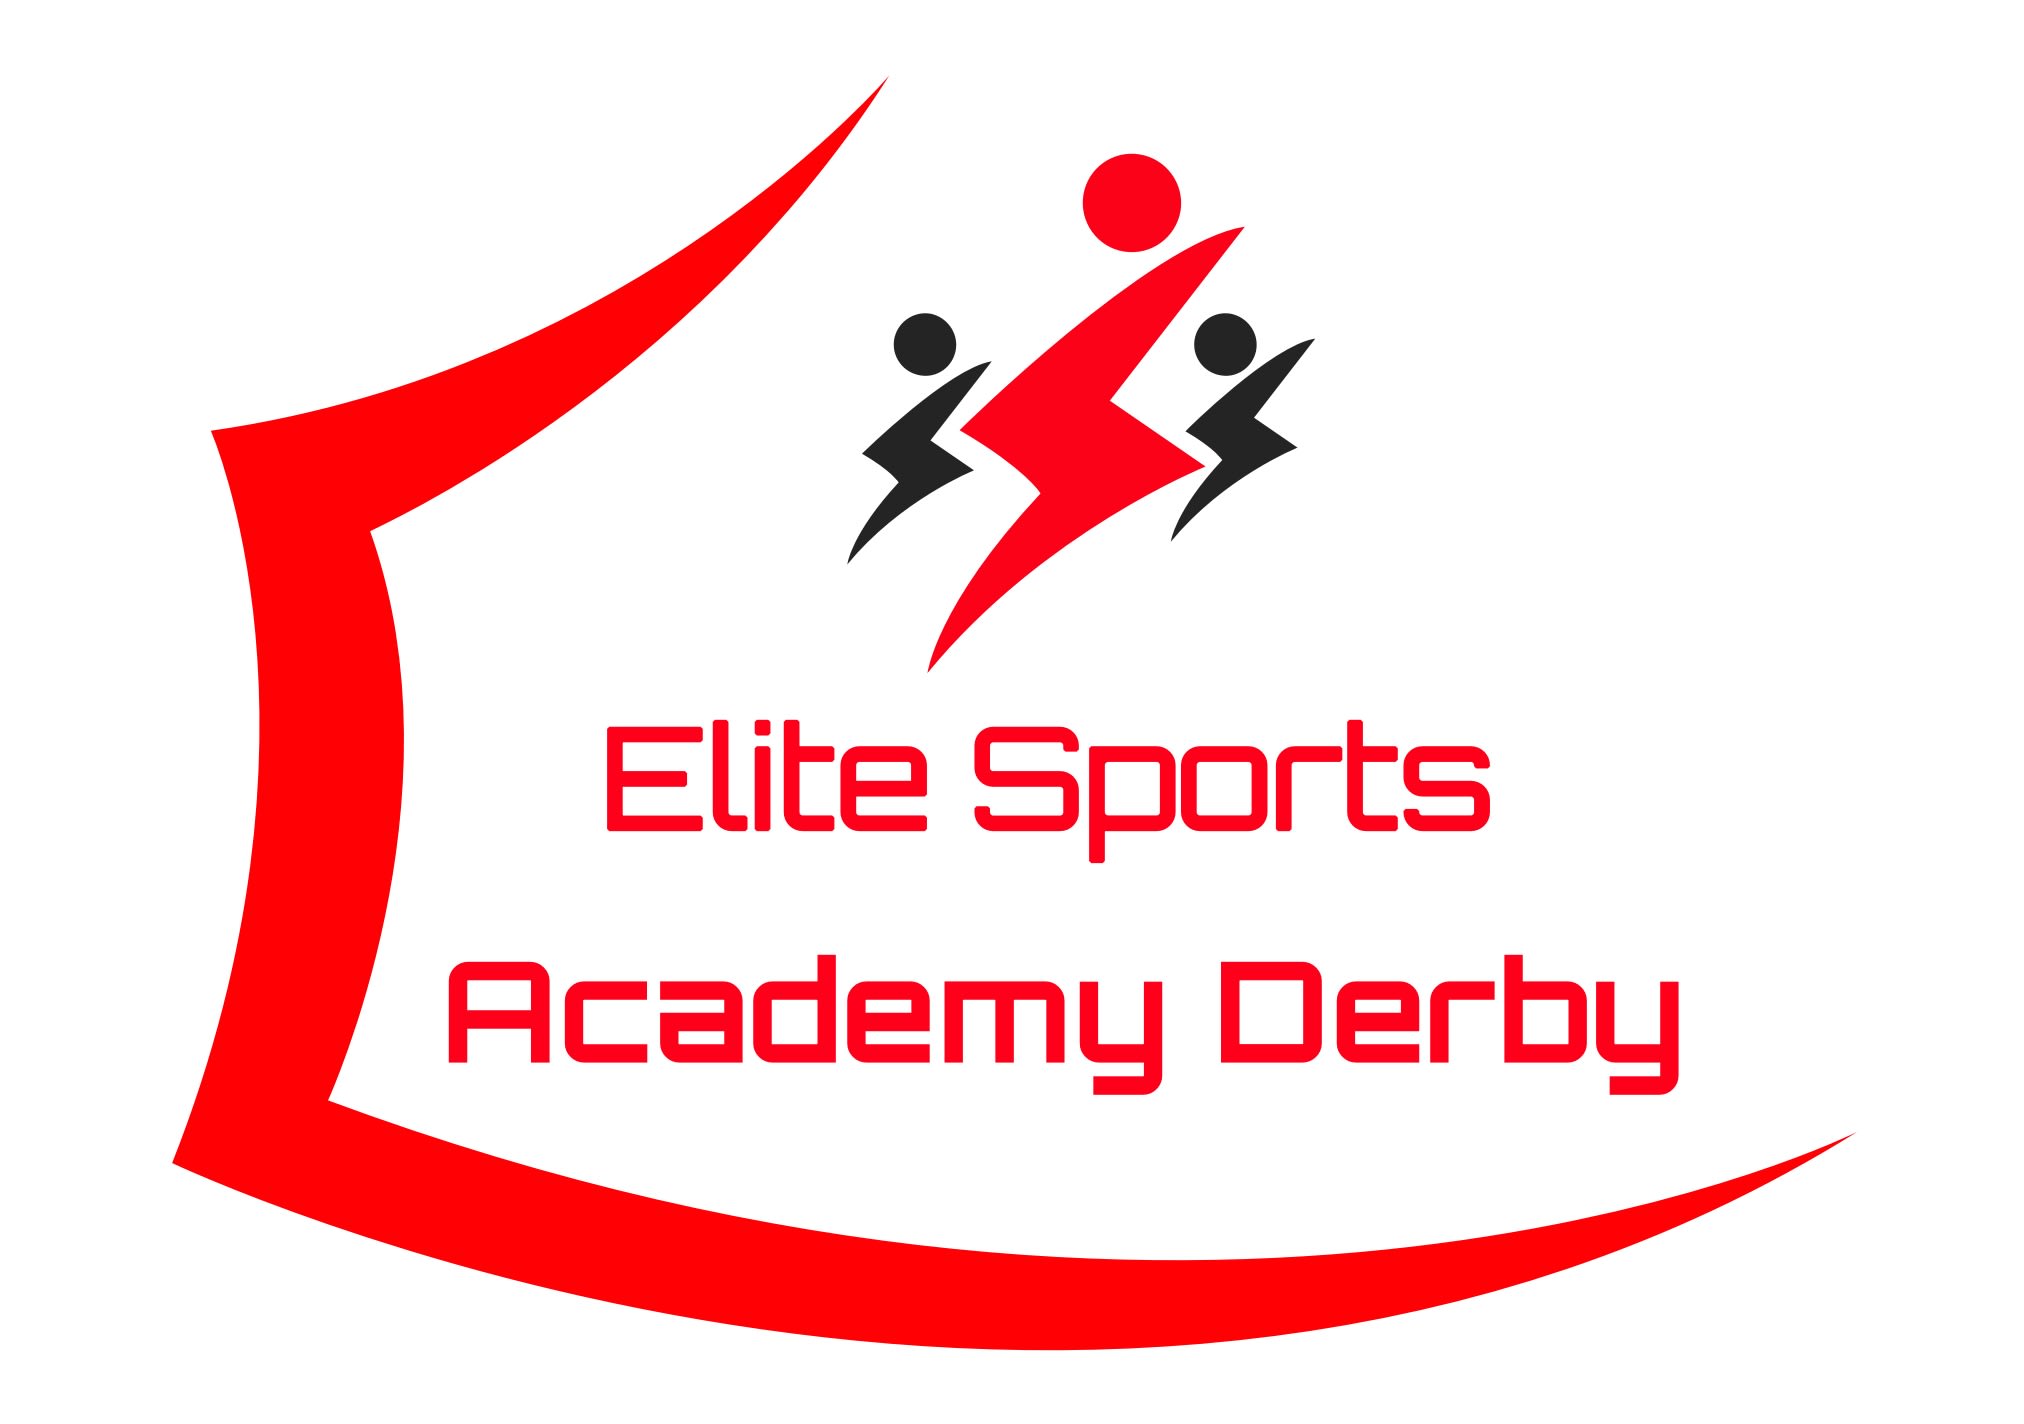 Elite Sports Academy Derby